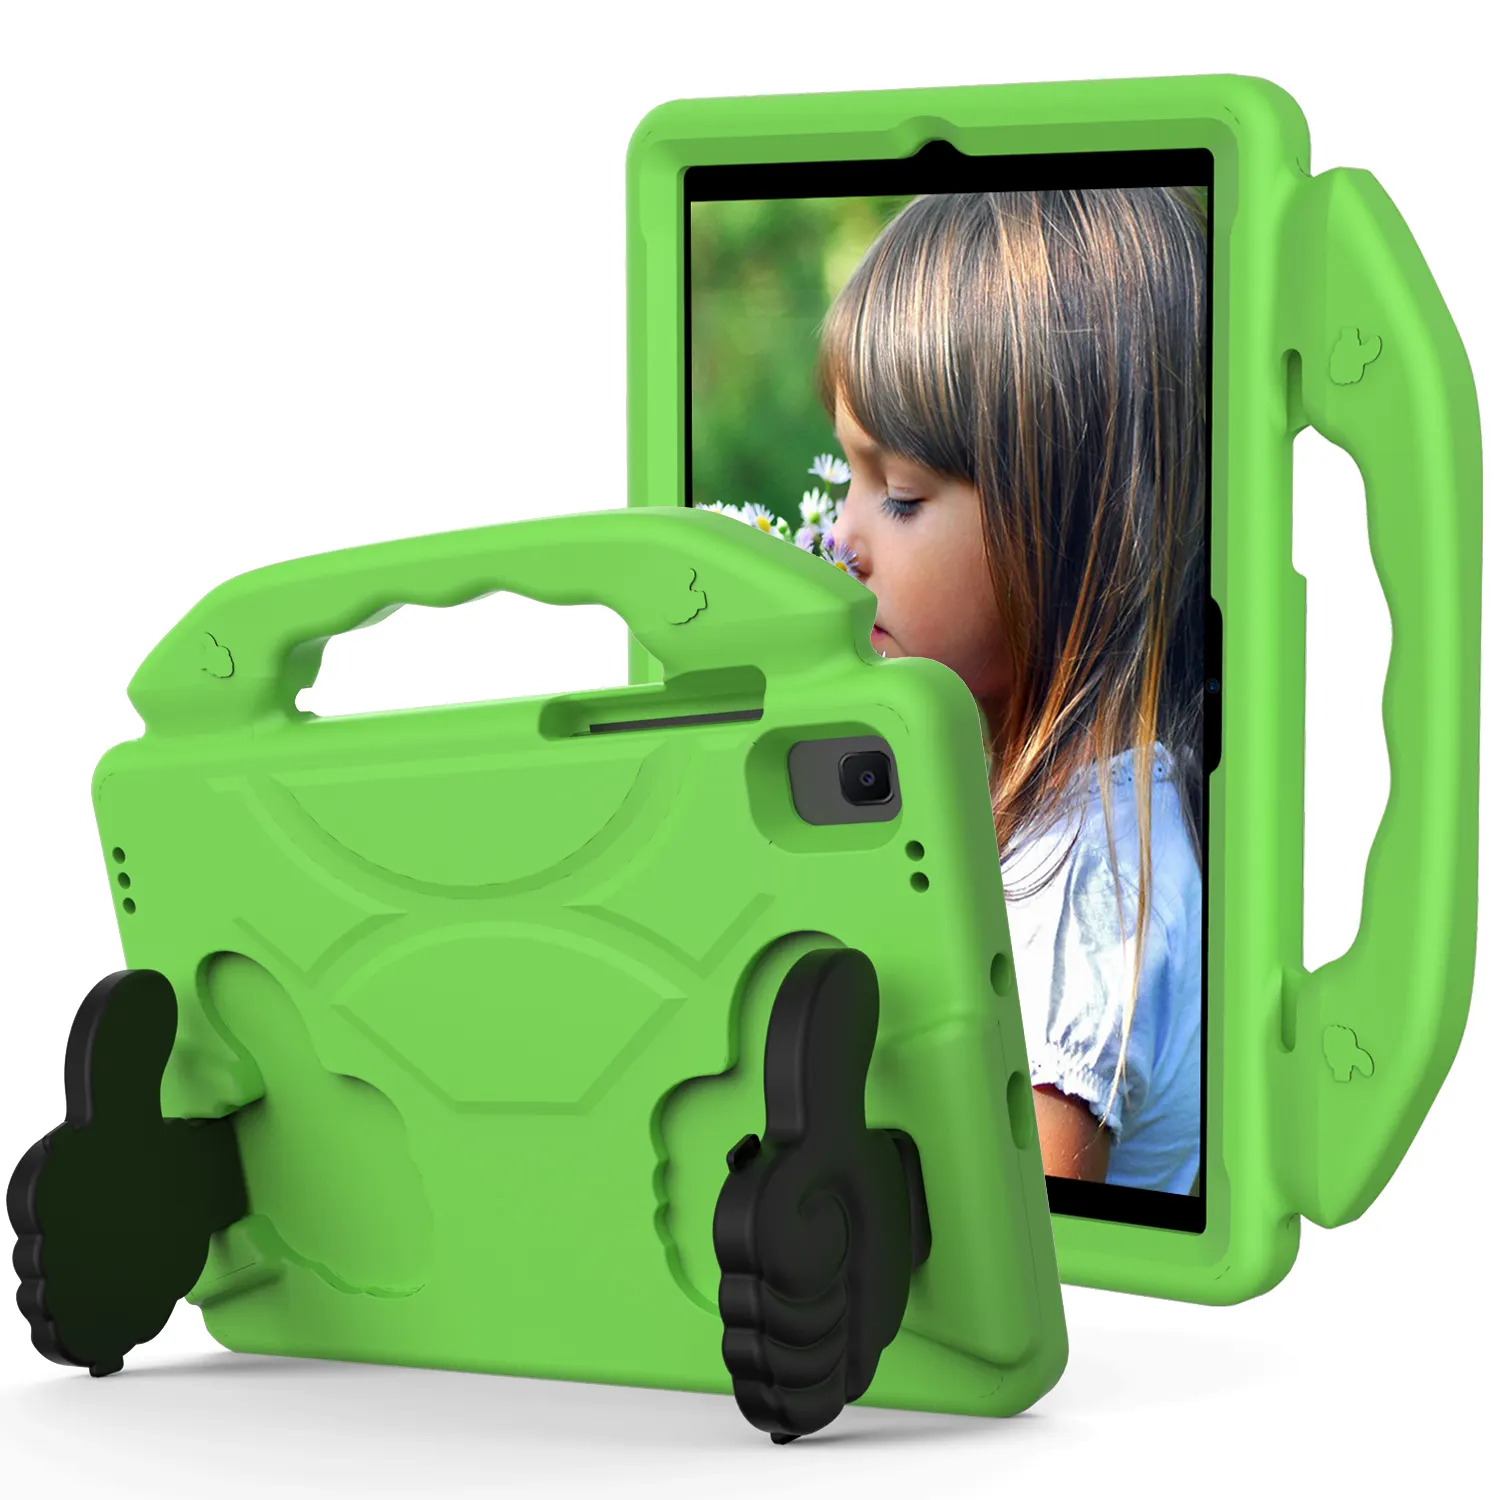 Étui de tablette à poignée EVA pour enfants, compatible avec Amazon Kindle fire hd7, 2015, 2017, 2019